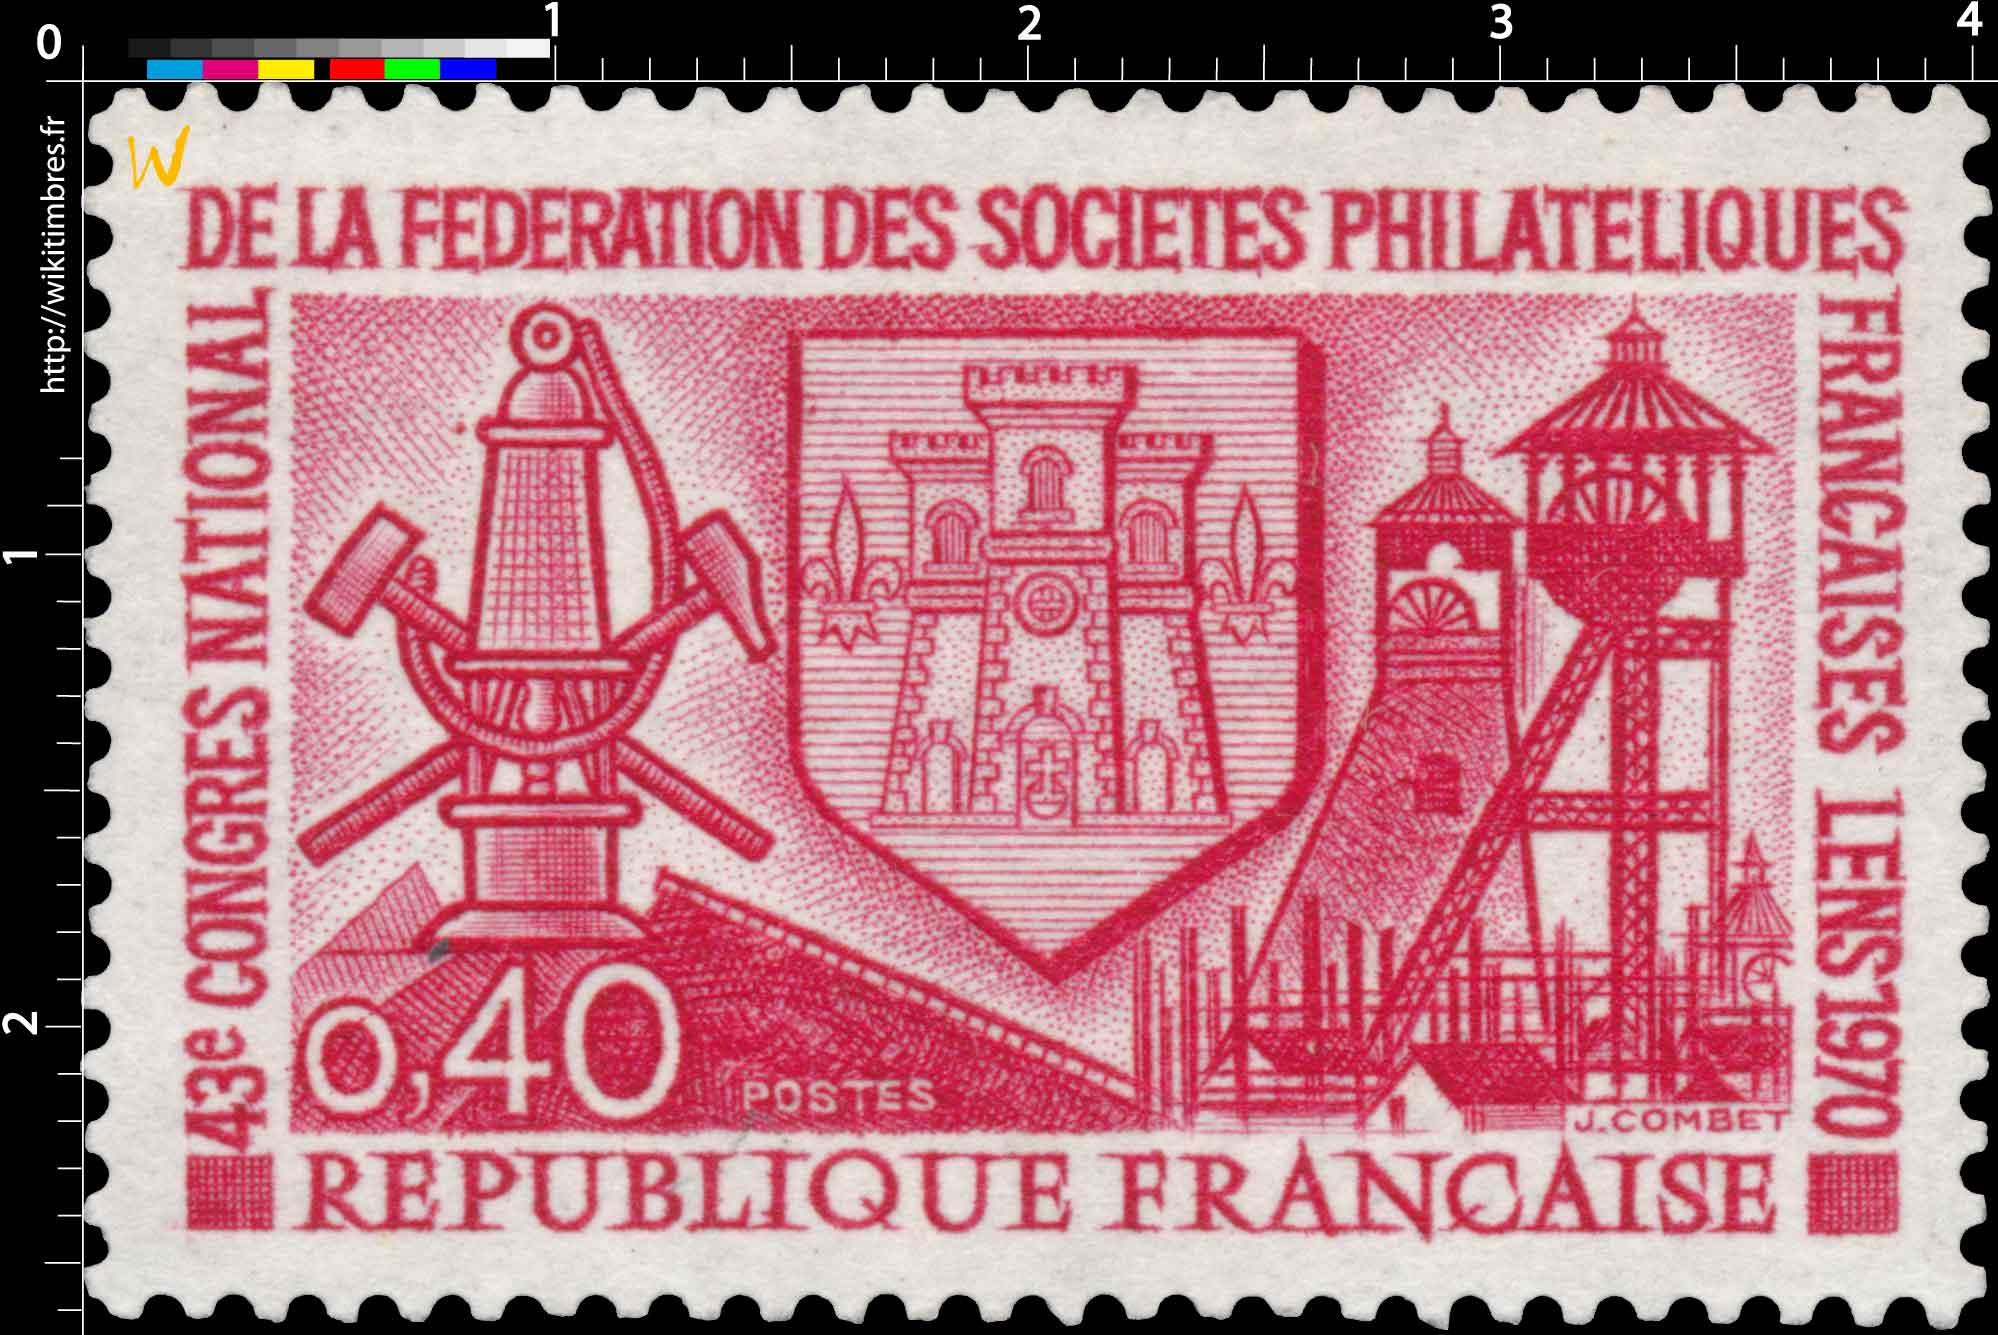 43e CONGRÈS NATIONAL DE LA FÉDÉRATION DES SOCIÉTÉS PHILATÉLIQUE FRANÇAISE LENS 1970